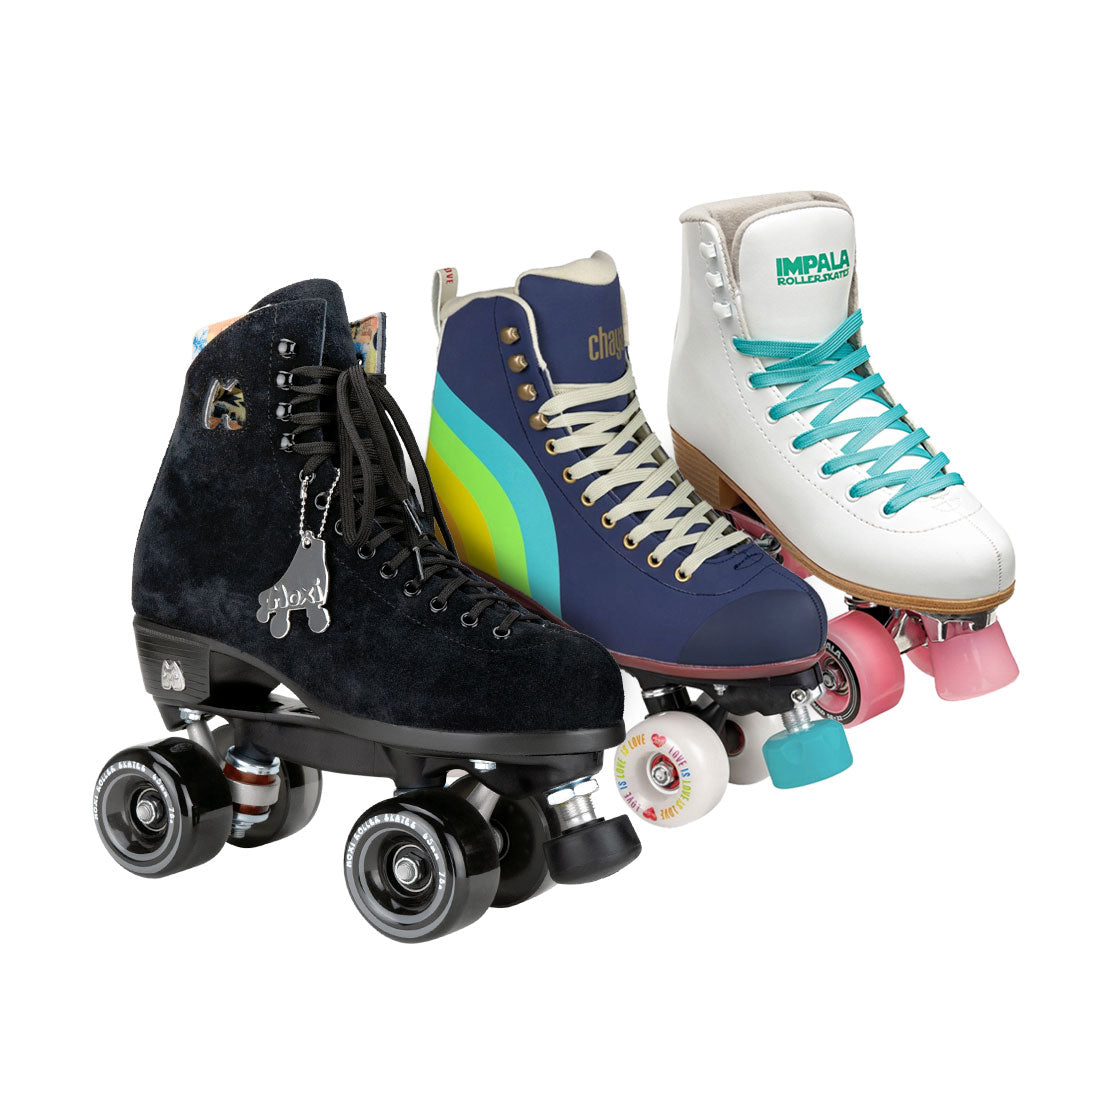 Recreational Roller Skates